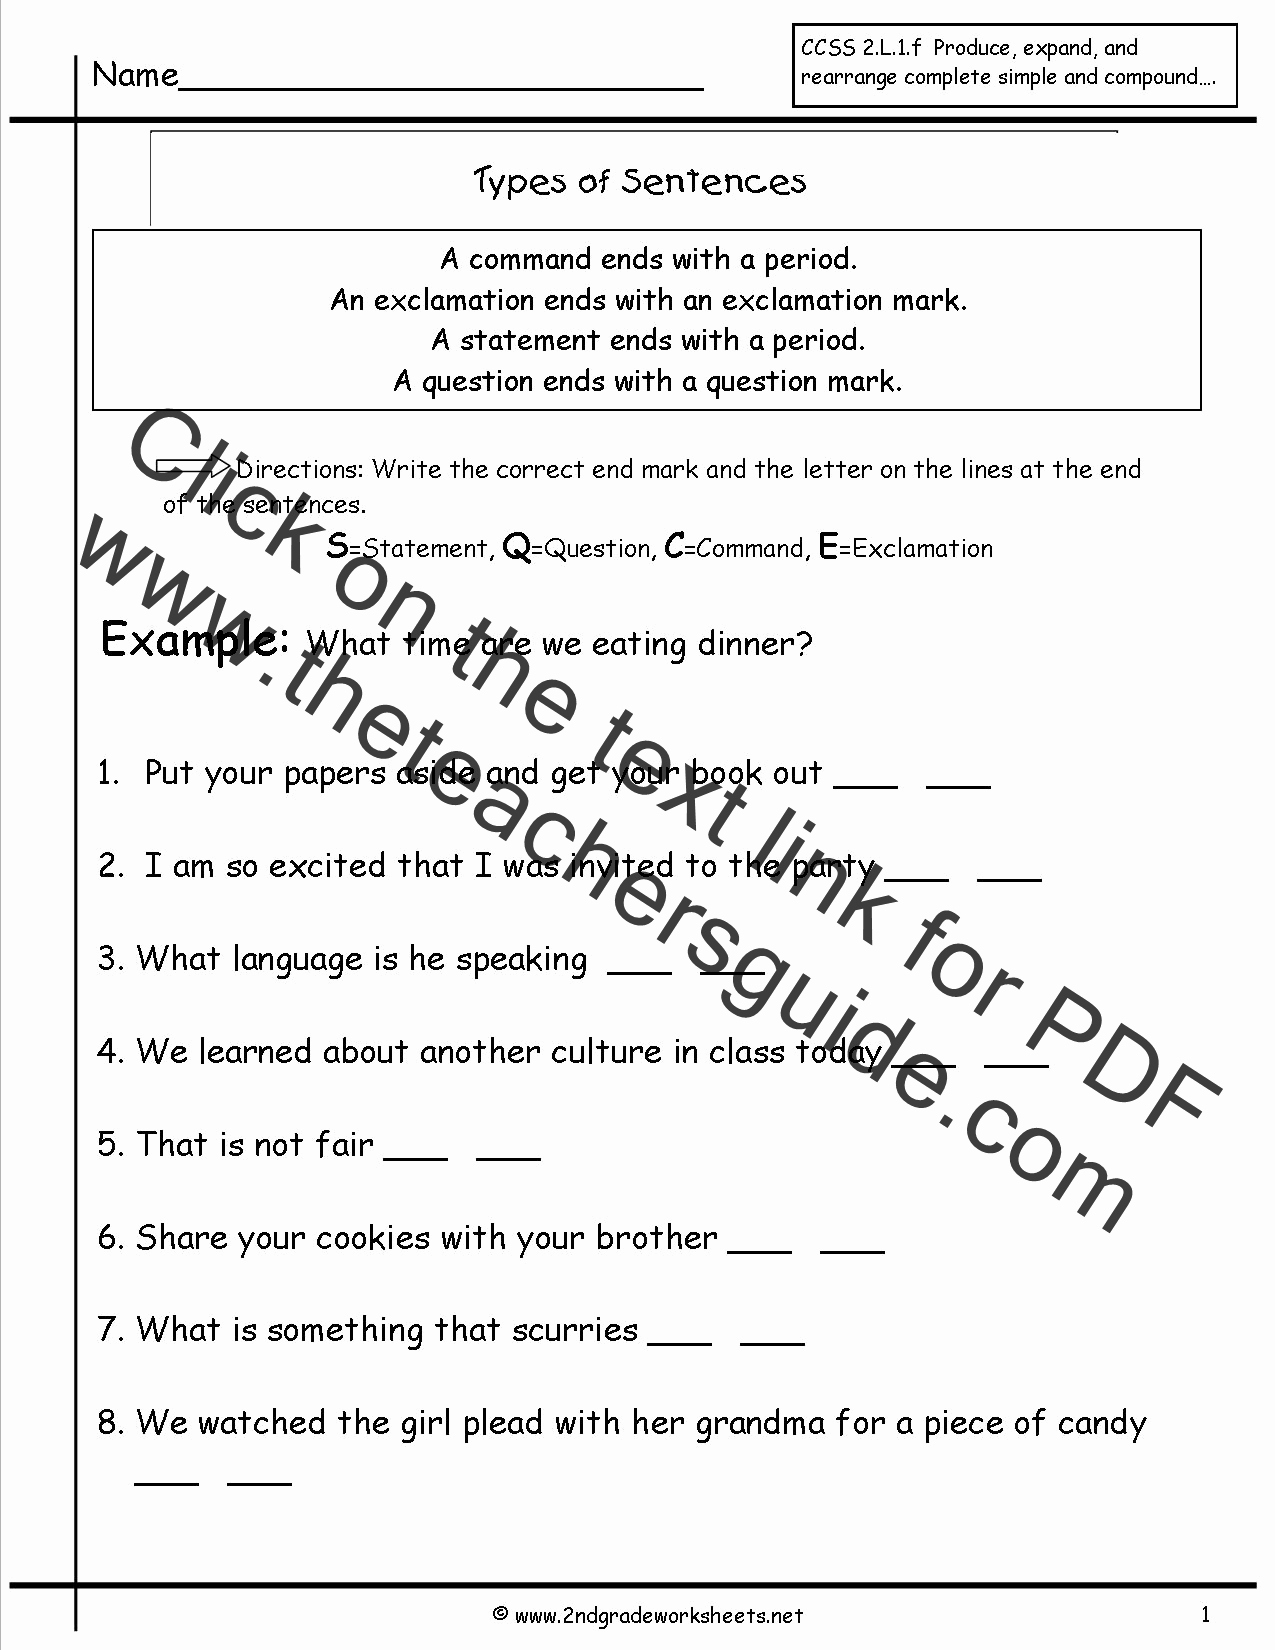 Four Kinds Of Sentences Worksheets Best Of Second Grade Sentences Worksheets Ccss 2 L 1 F Worksheets